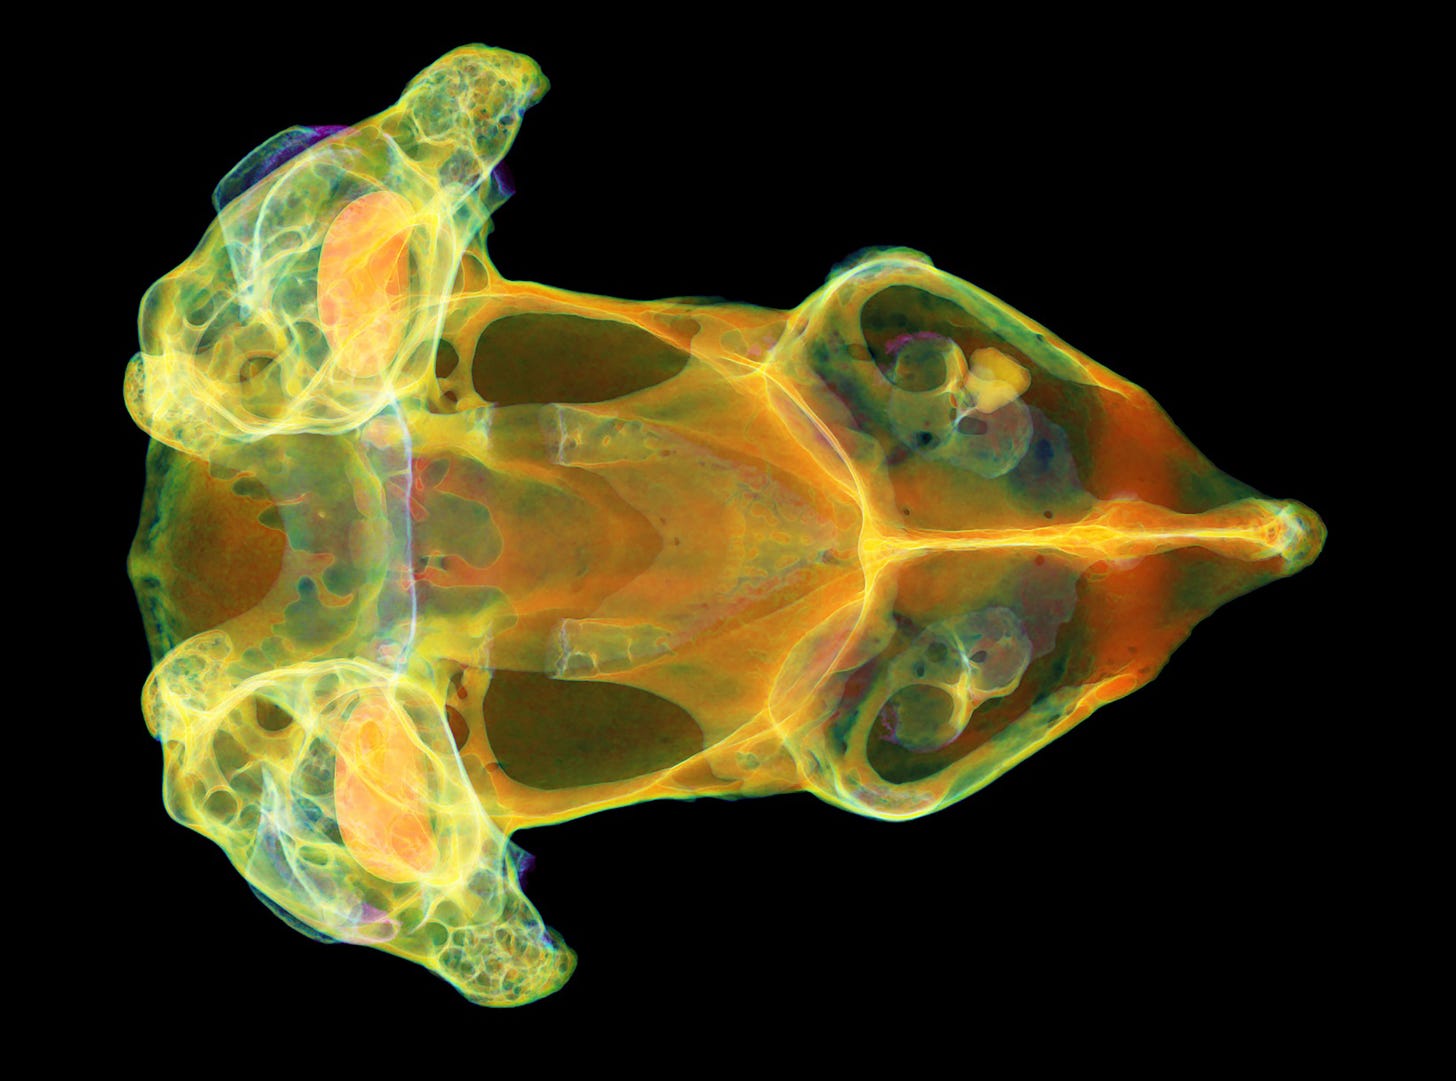 pig-nose frog scan